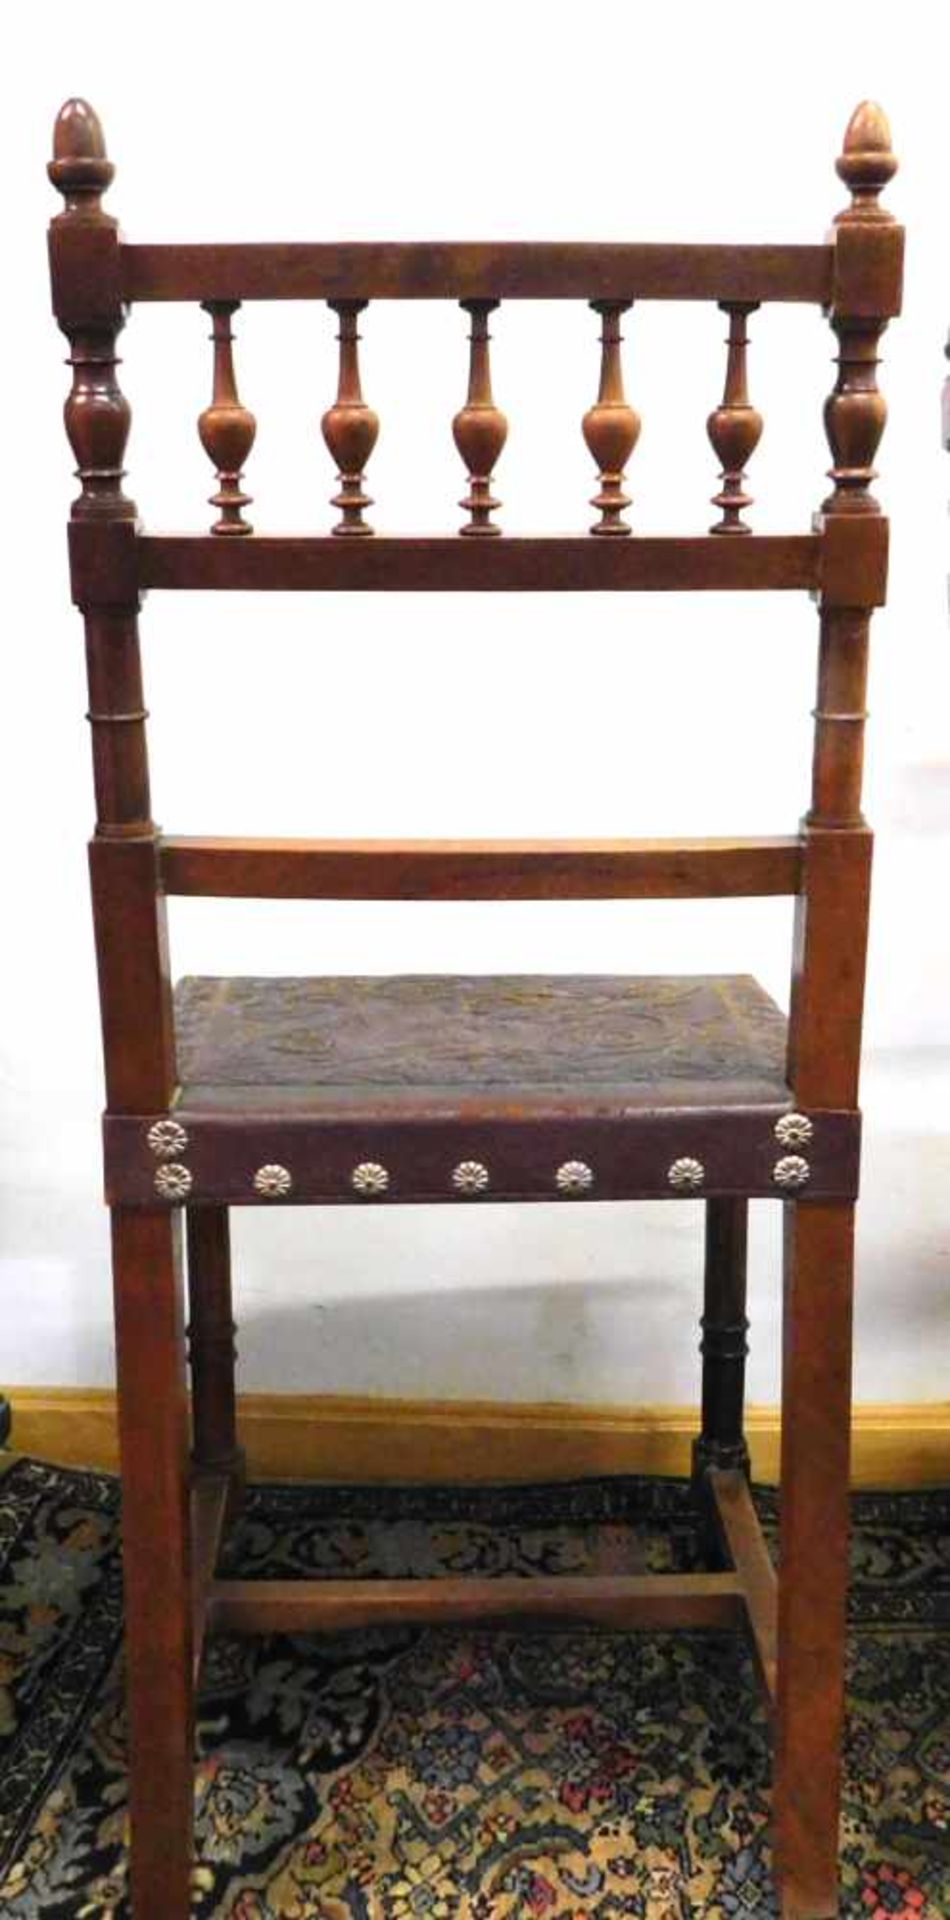 4 Stühle, Frankreich, Historismus um 1880, Nussbaum - Image 5 of 5